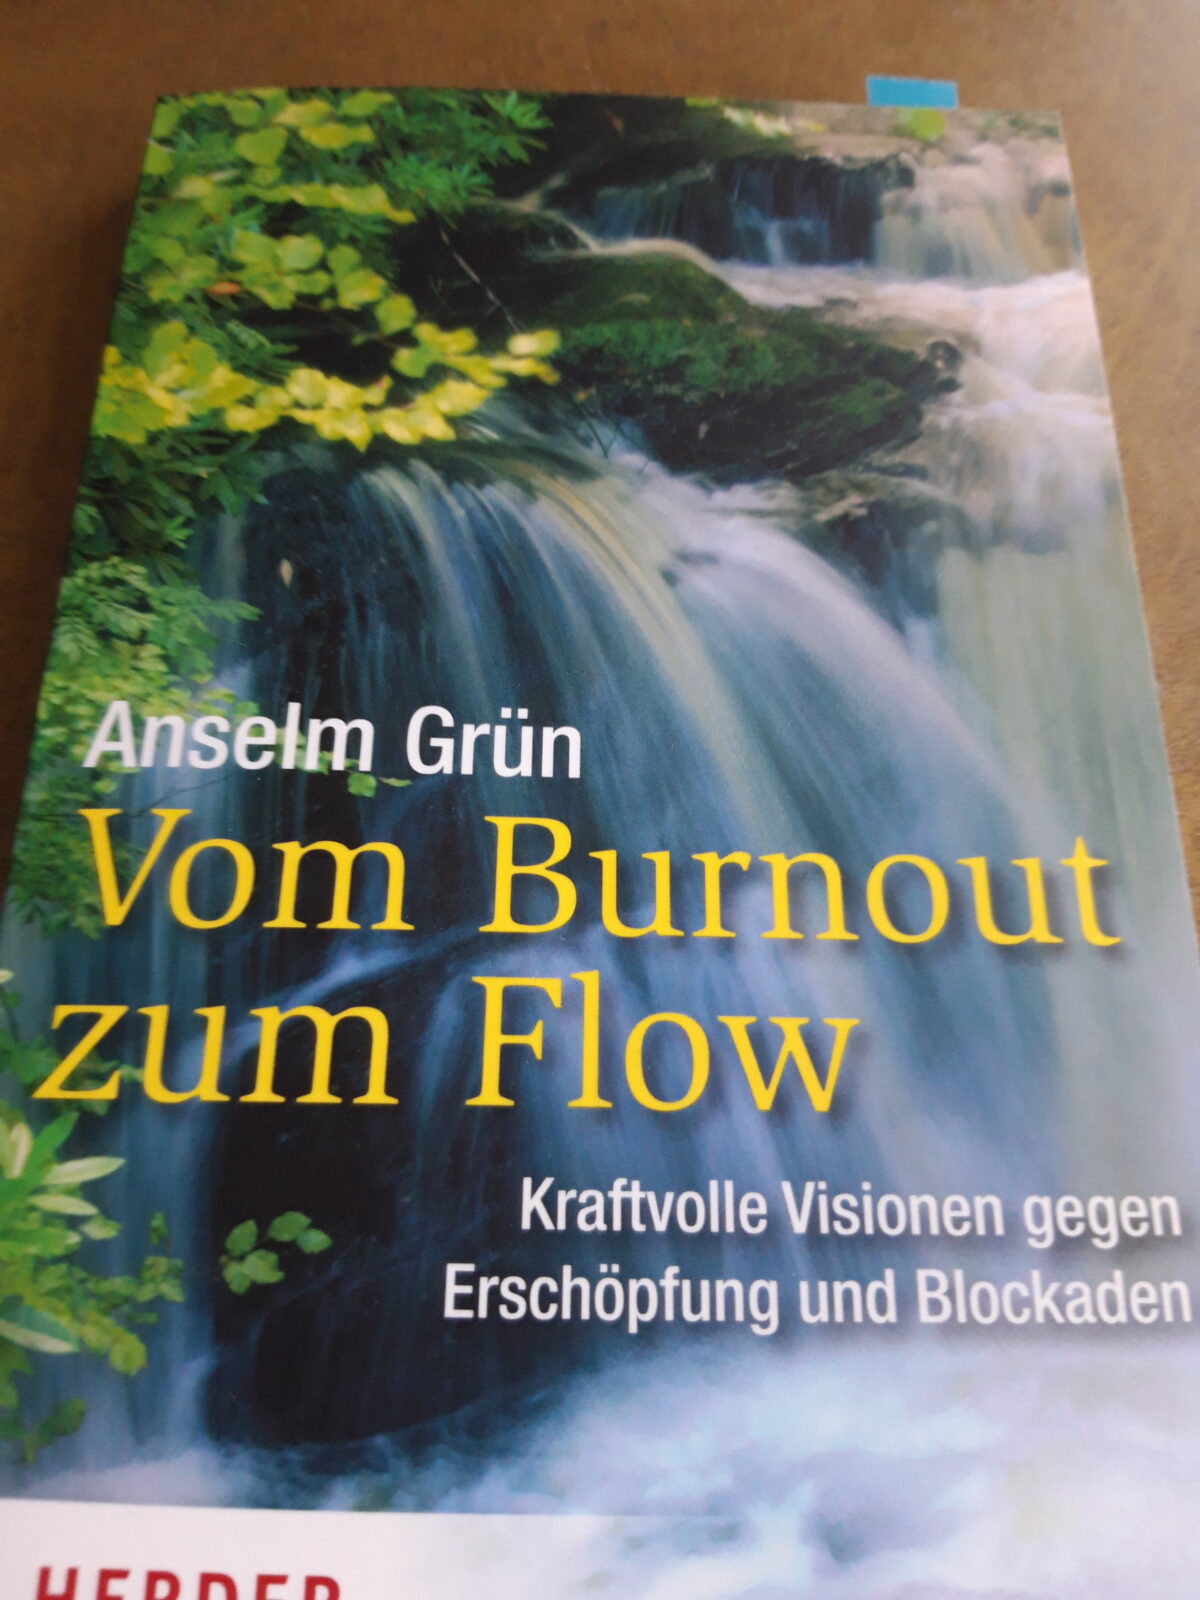 A. Grün: Vom Burnout zum Flow